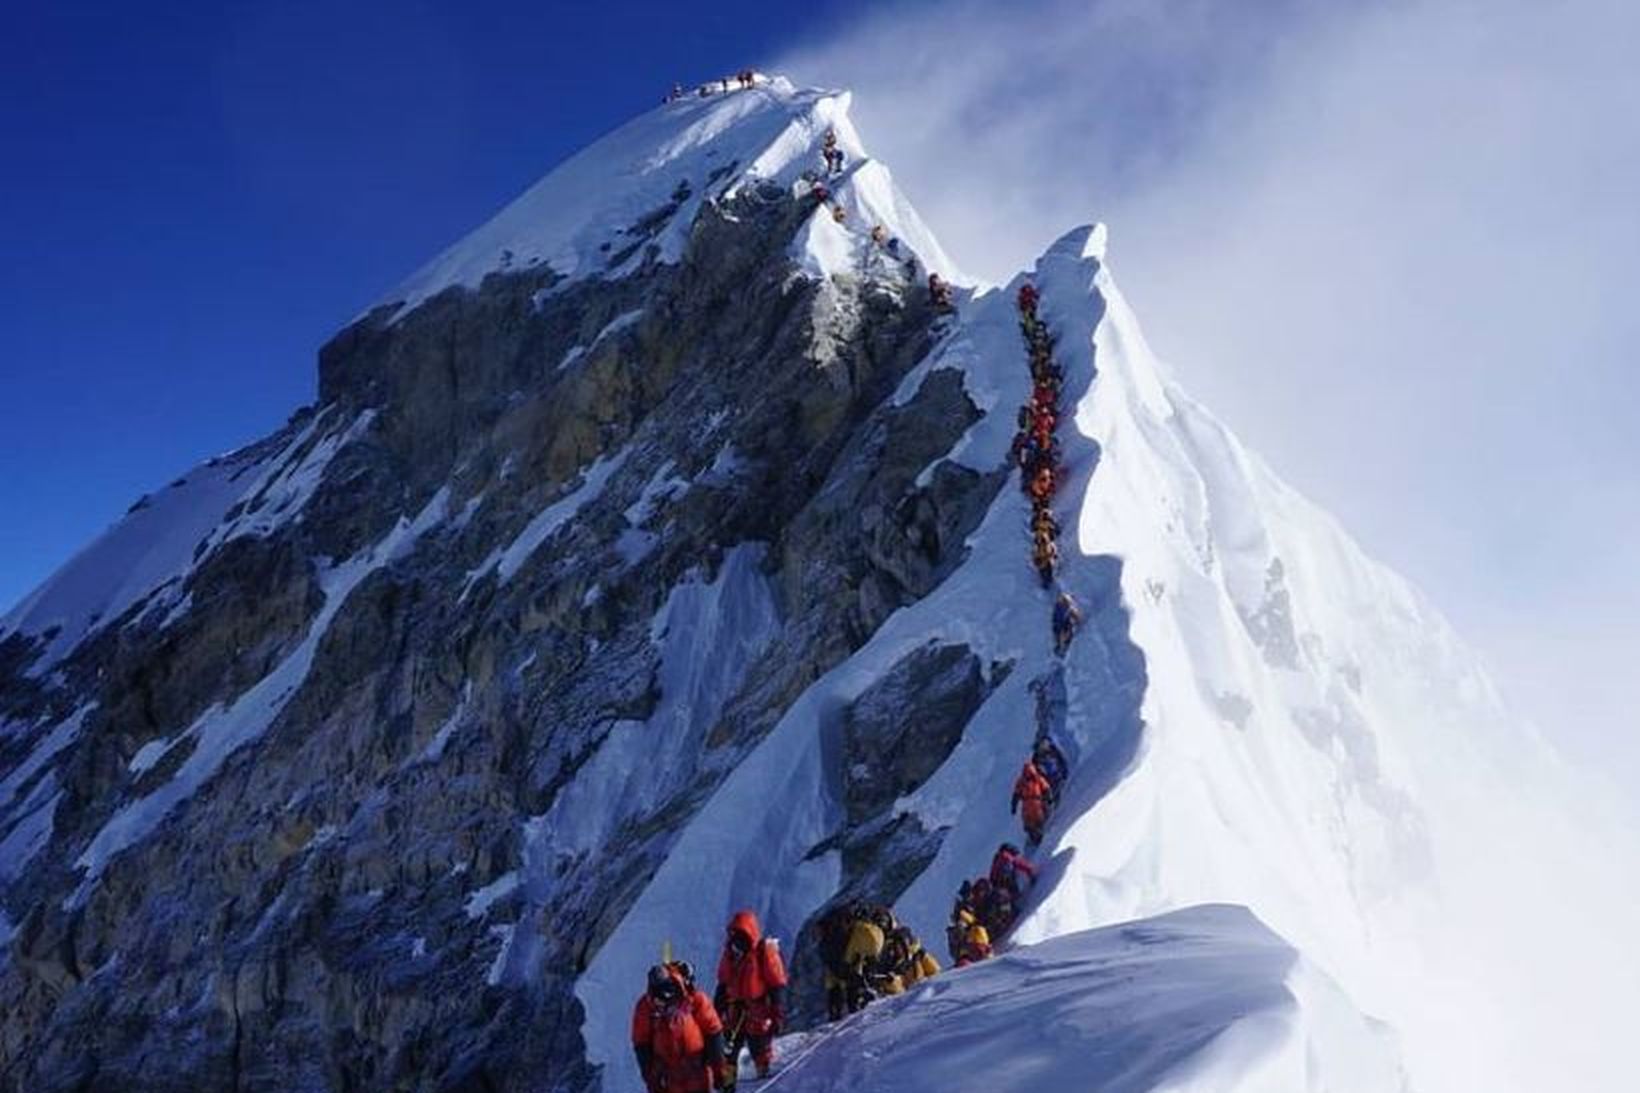 Mynd sem Leifur tók á fimmtudag af suðurtindi Everest sýni …